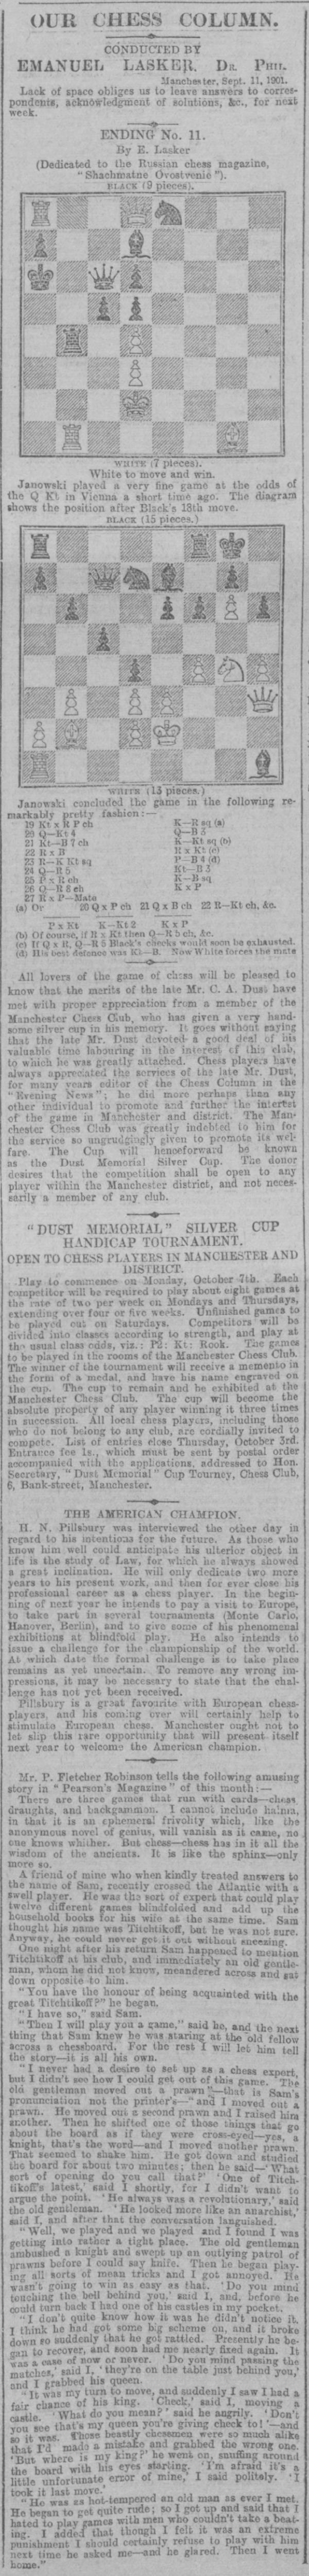 1901.09.11-01 Manchester Evening News.jpg